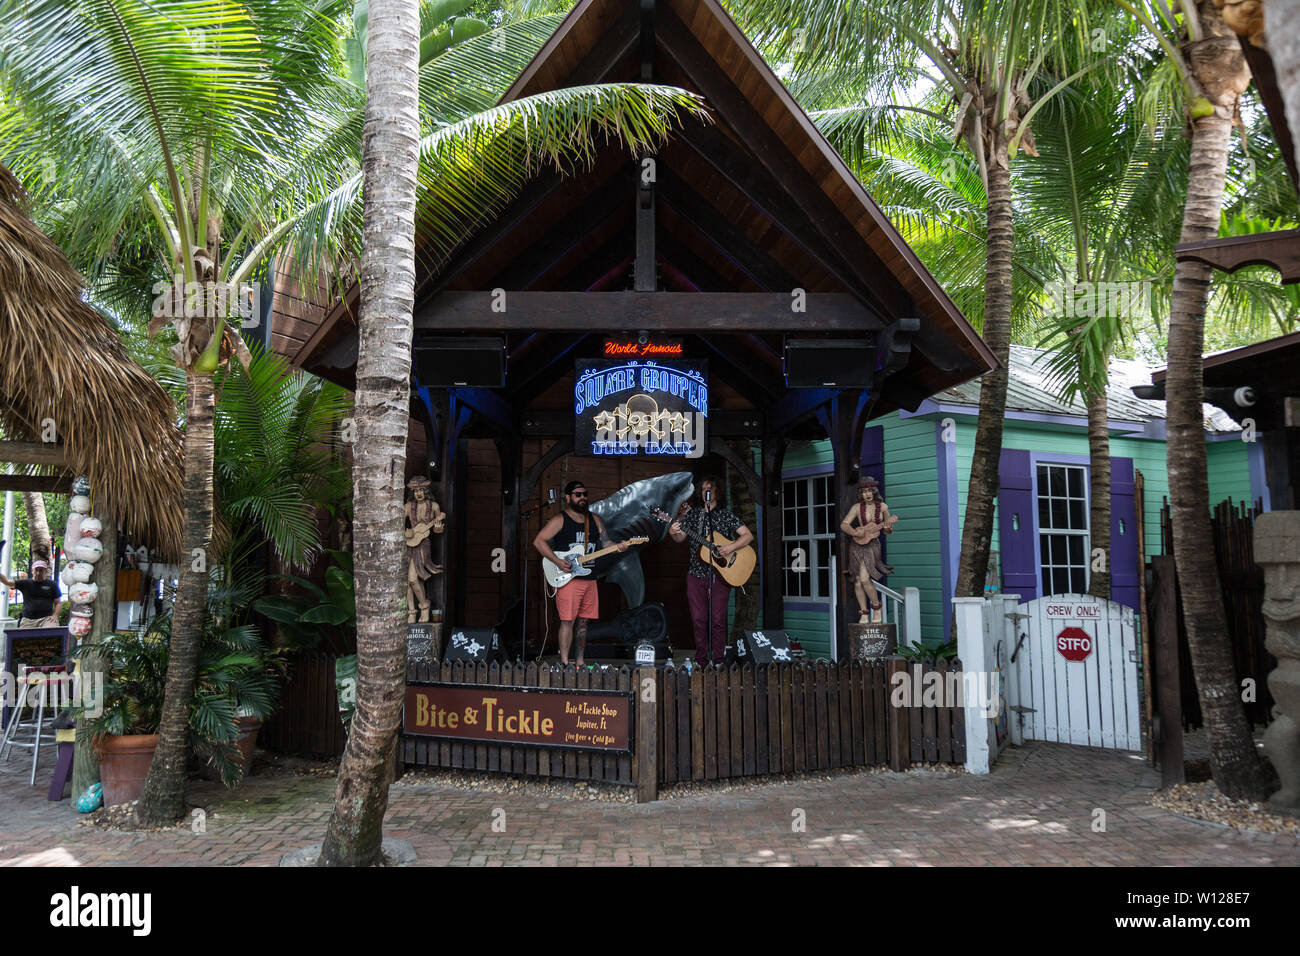 Le duo longueurs d'effectue la musique au Square le mérou, le Tiki Bar au bord de l'eau à Jupiter Inlet, Florida, USA. Banque D'Images